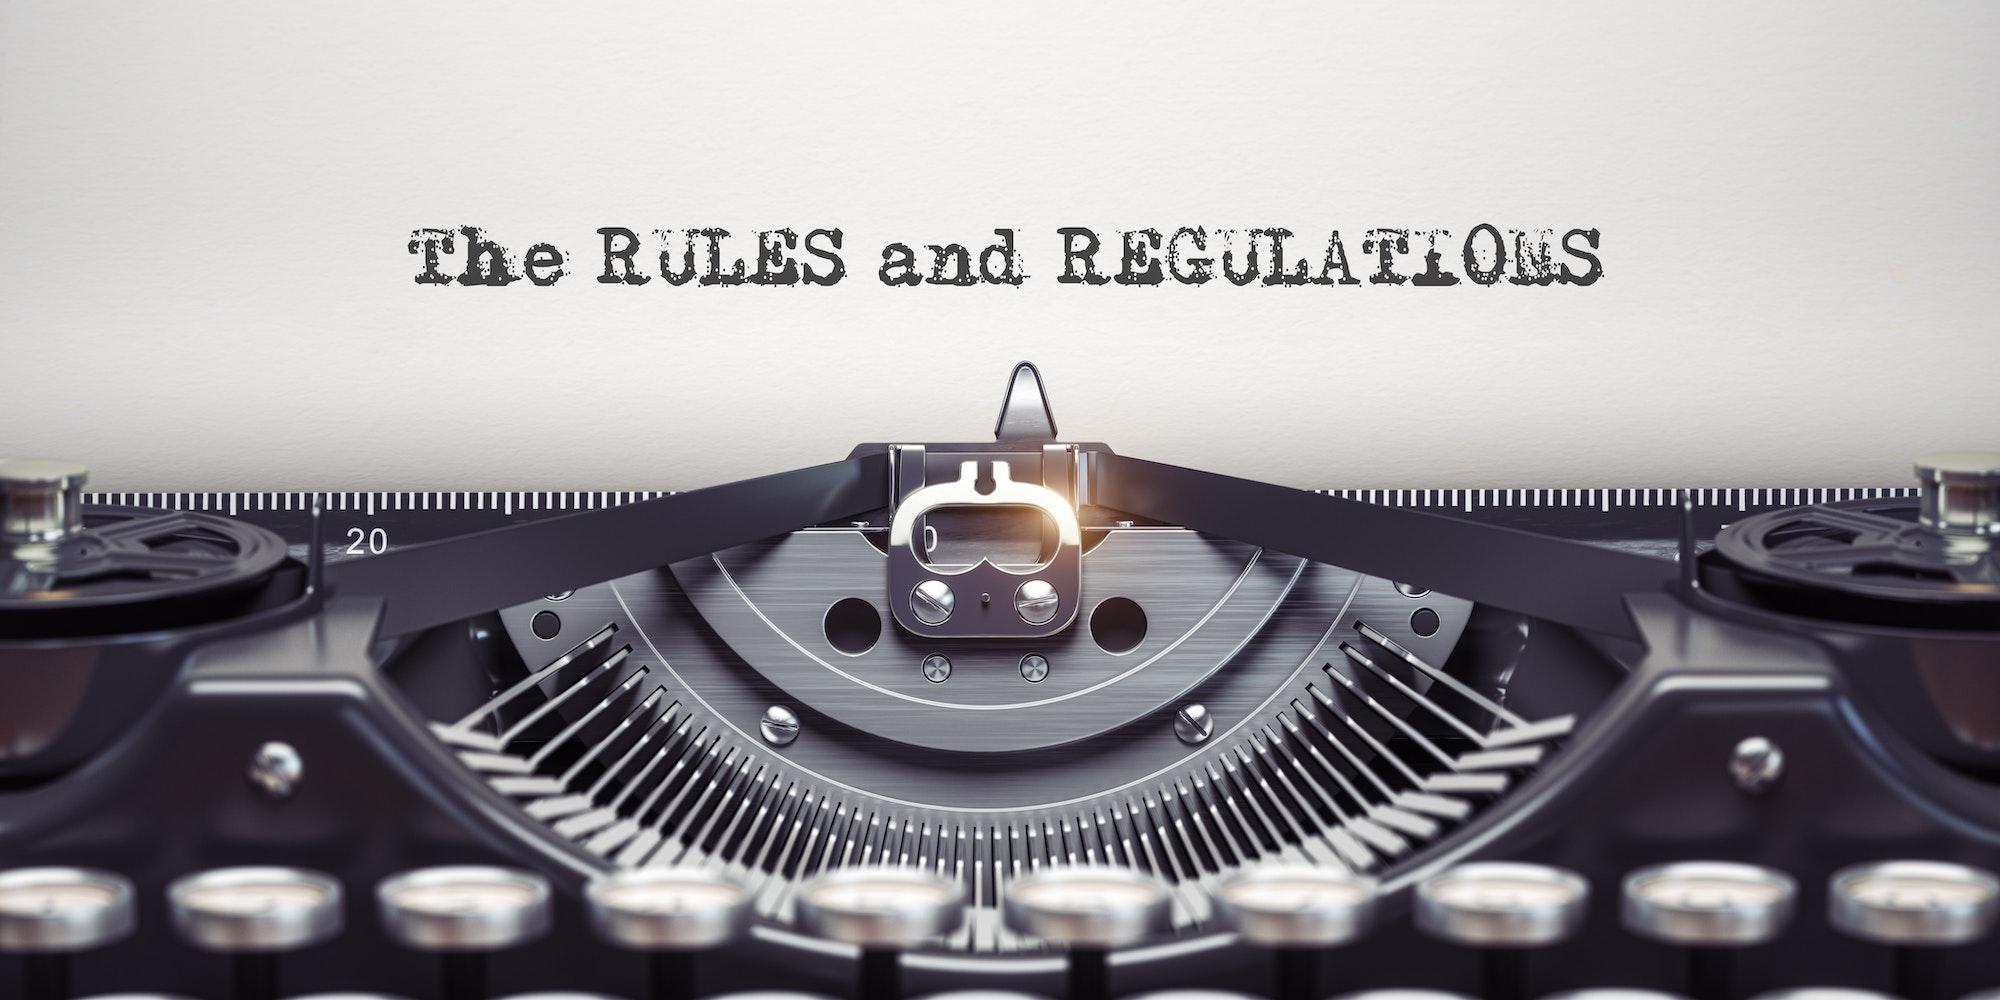 Rules and regulationswritten by typewriter. Typewriter and text on white sheet. Ilustrasi PSAK 24 - Pengertian dan Prinsip Dasar, membahas imbalan kerja dalam konteks akuntansi.